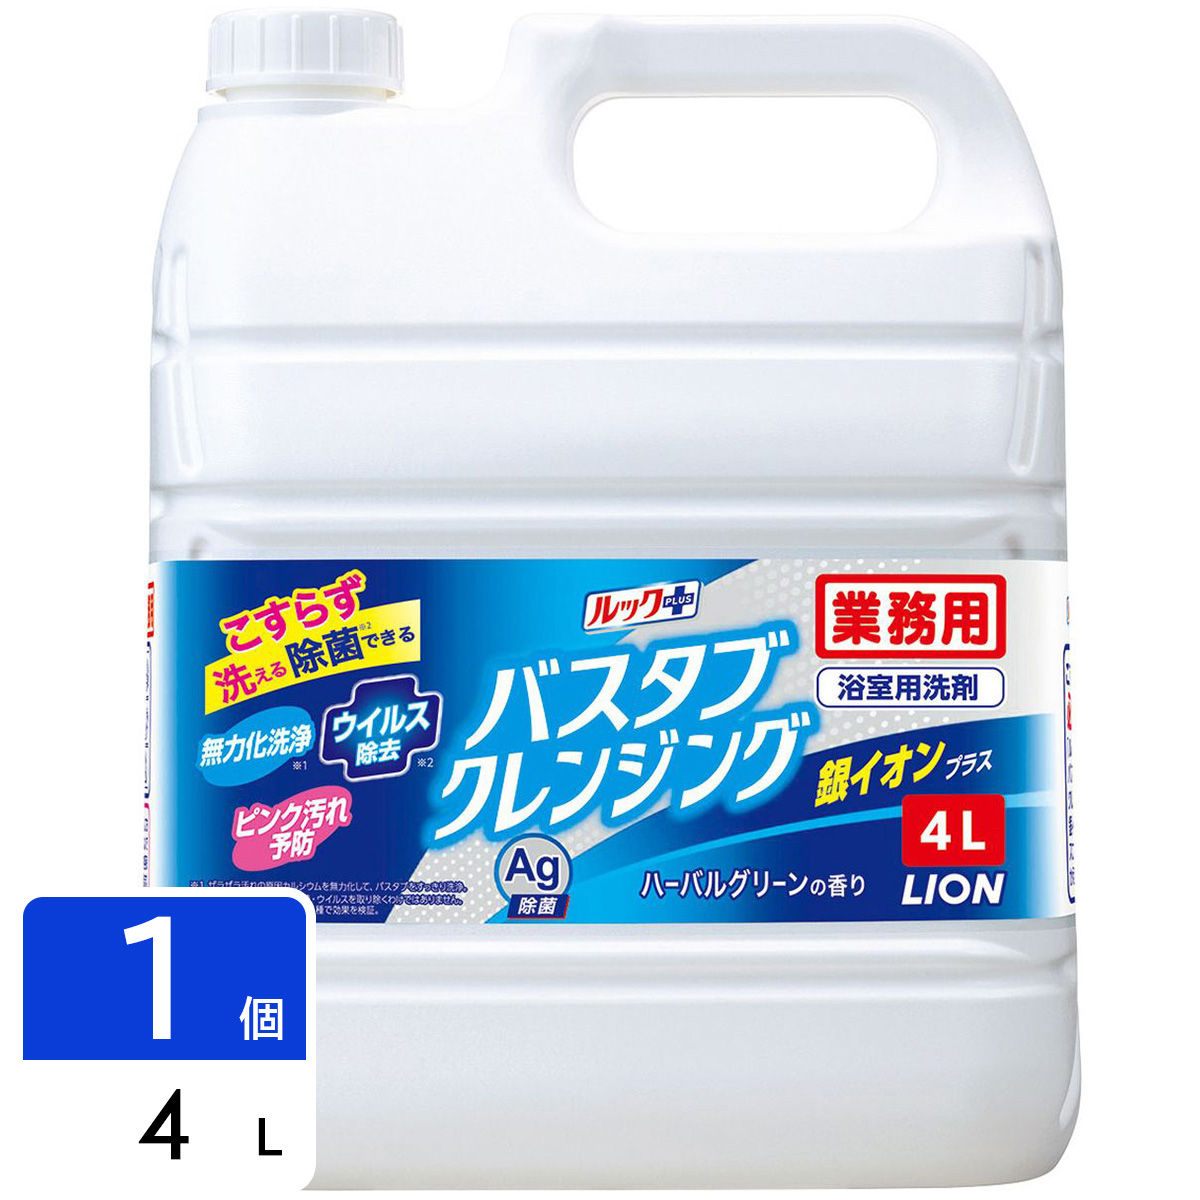 バスタブクレンジング 銀イオンプラス おふろ用洗剤 業務用 4L